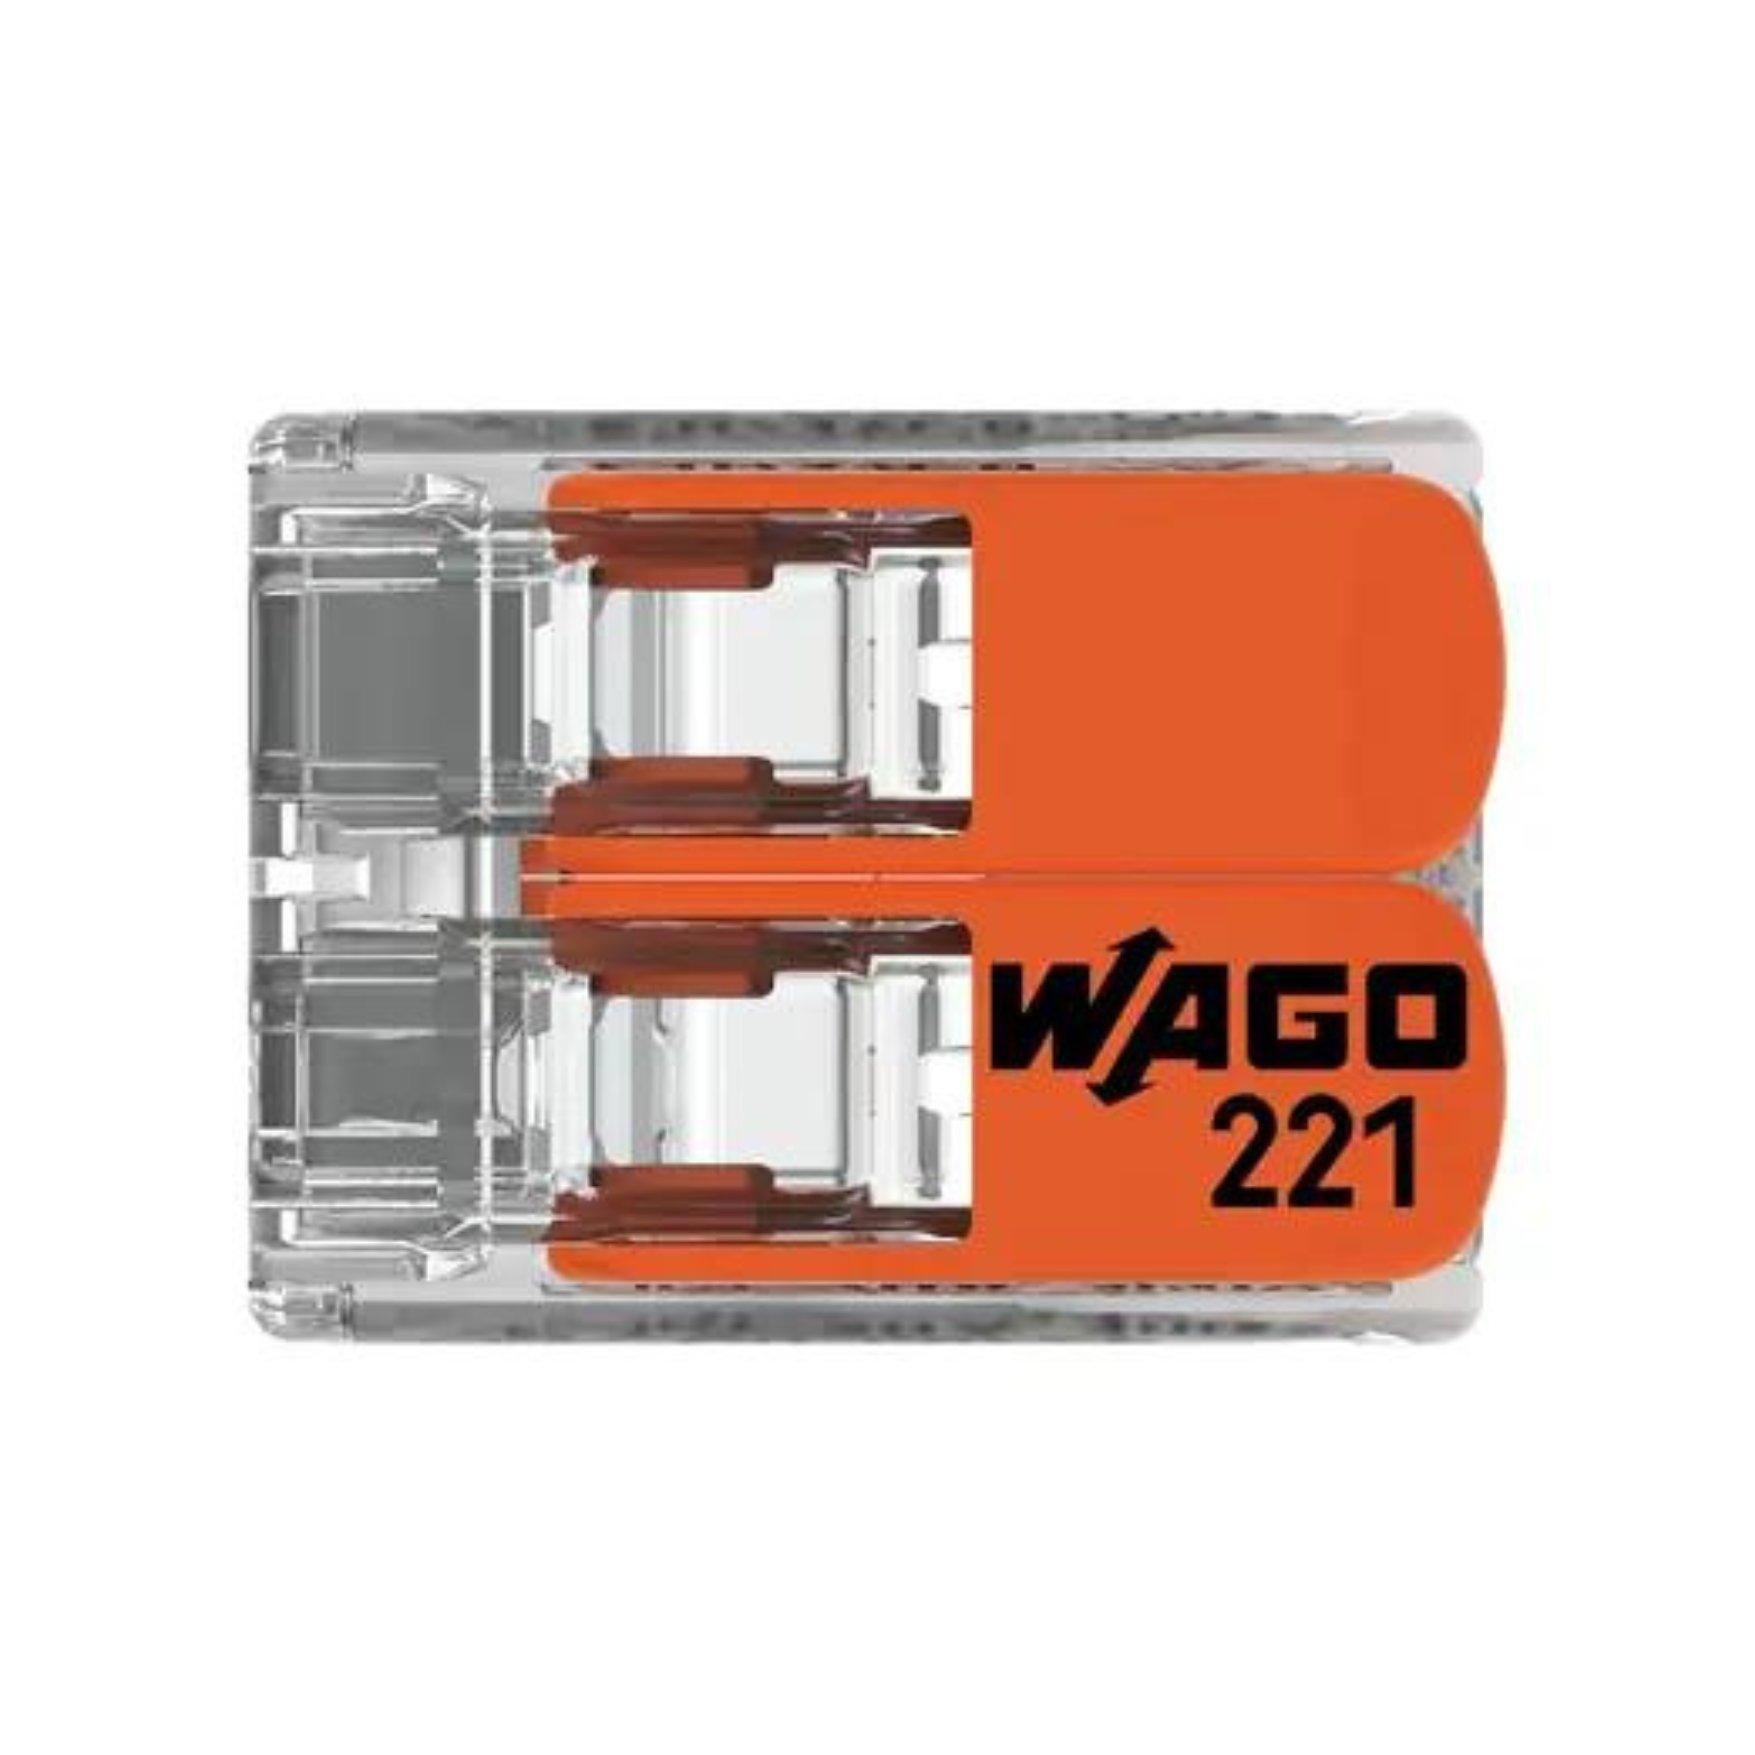 wago/221-412-bundle-4